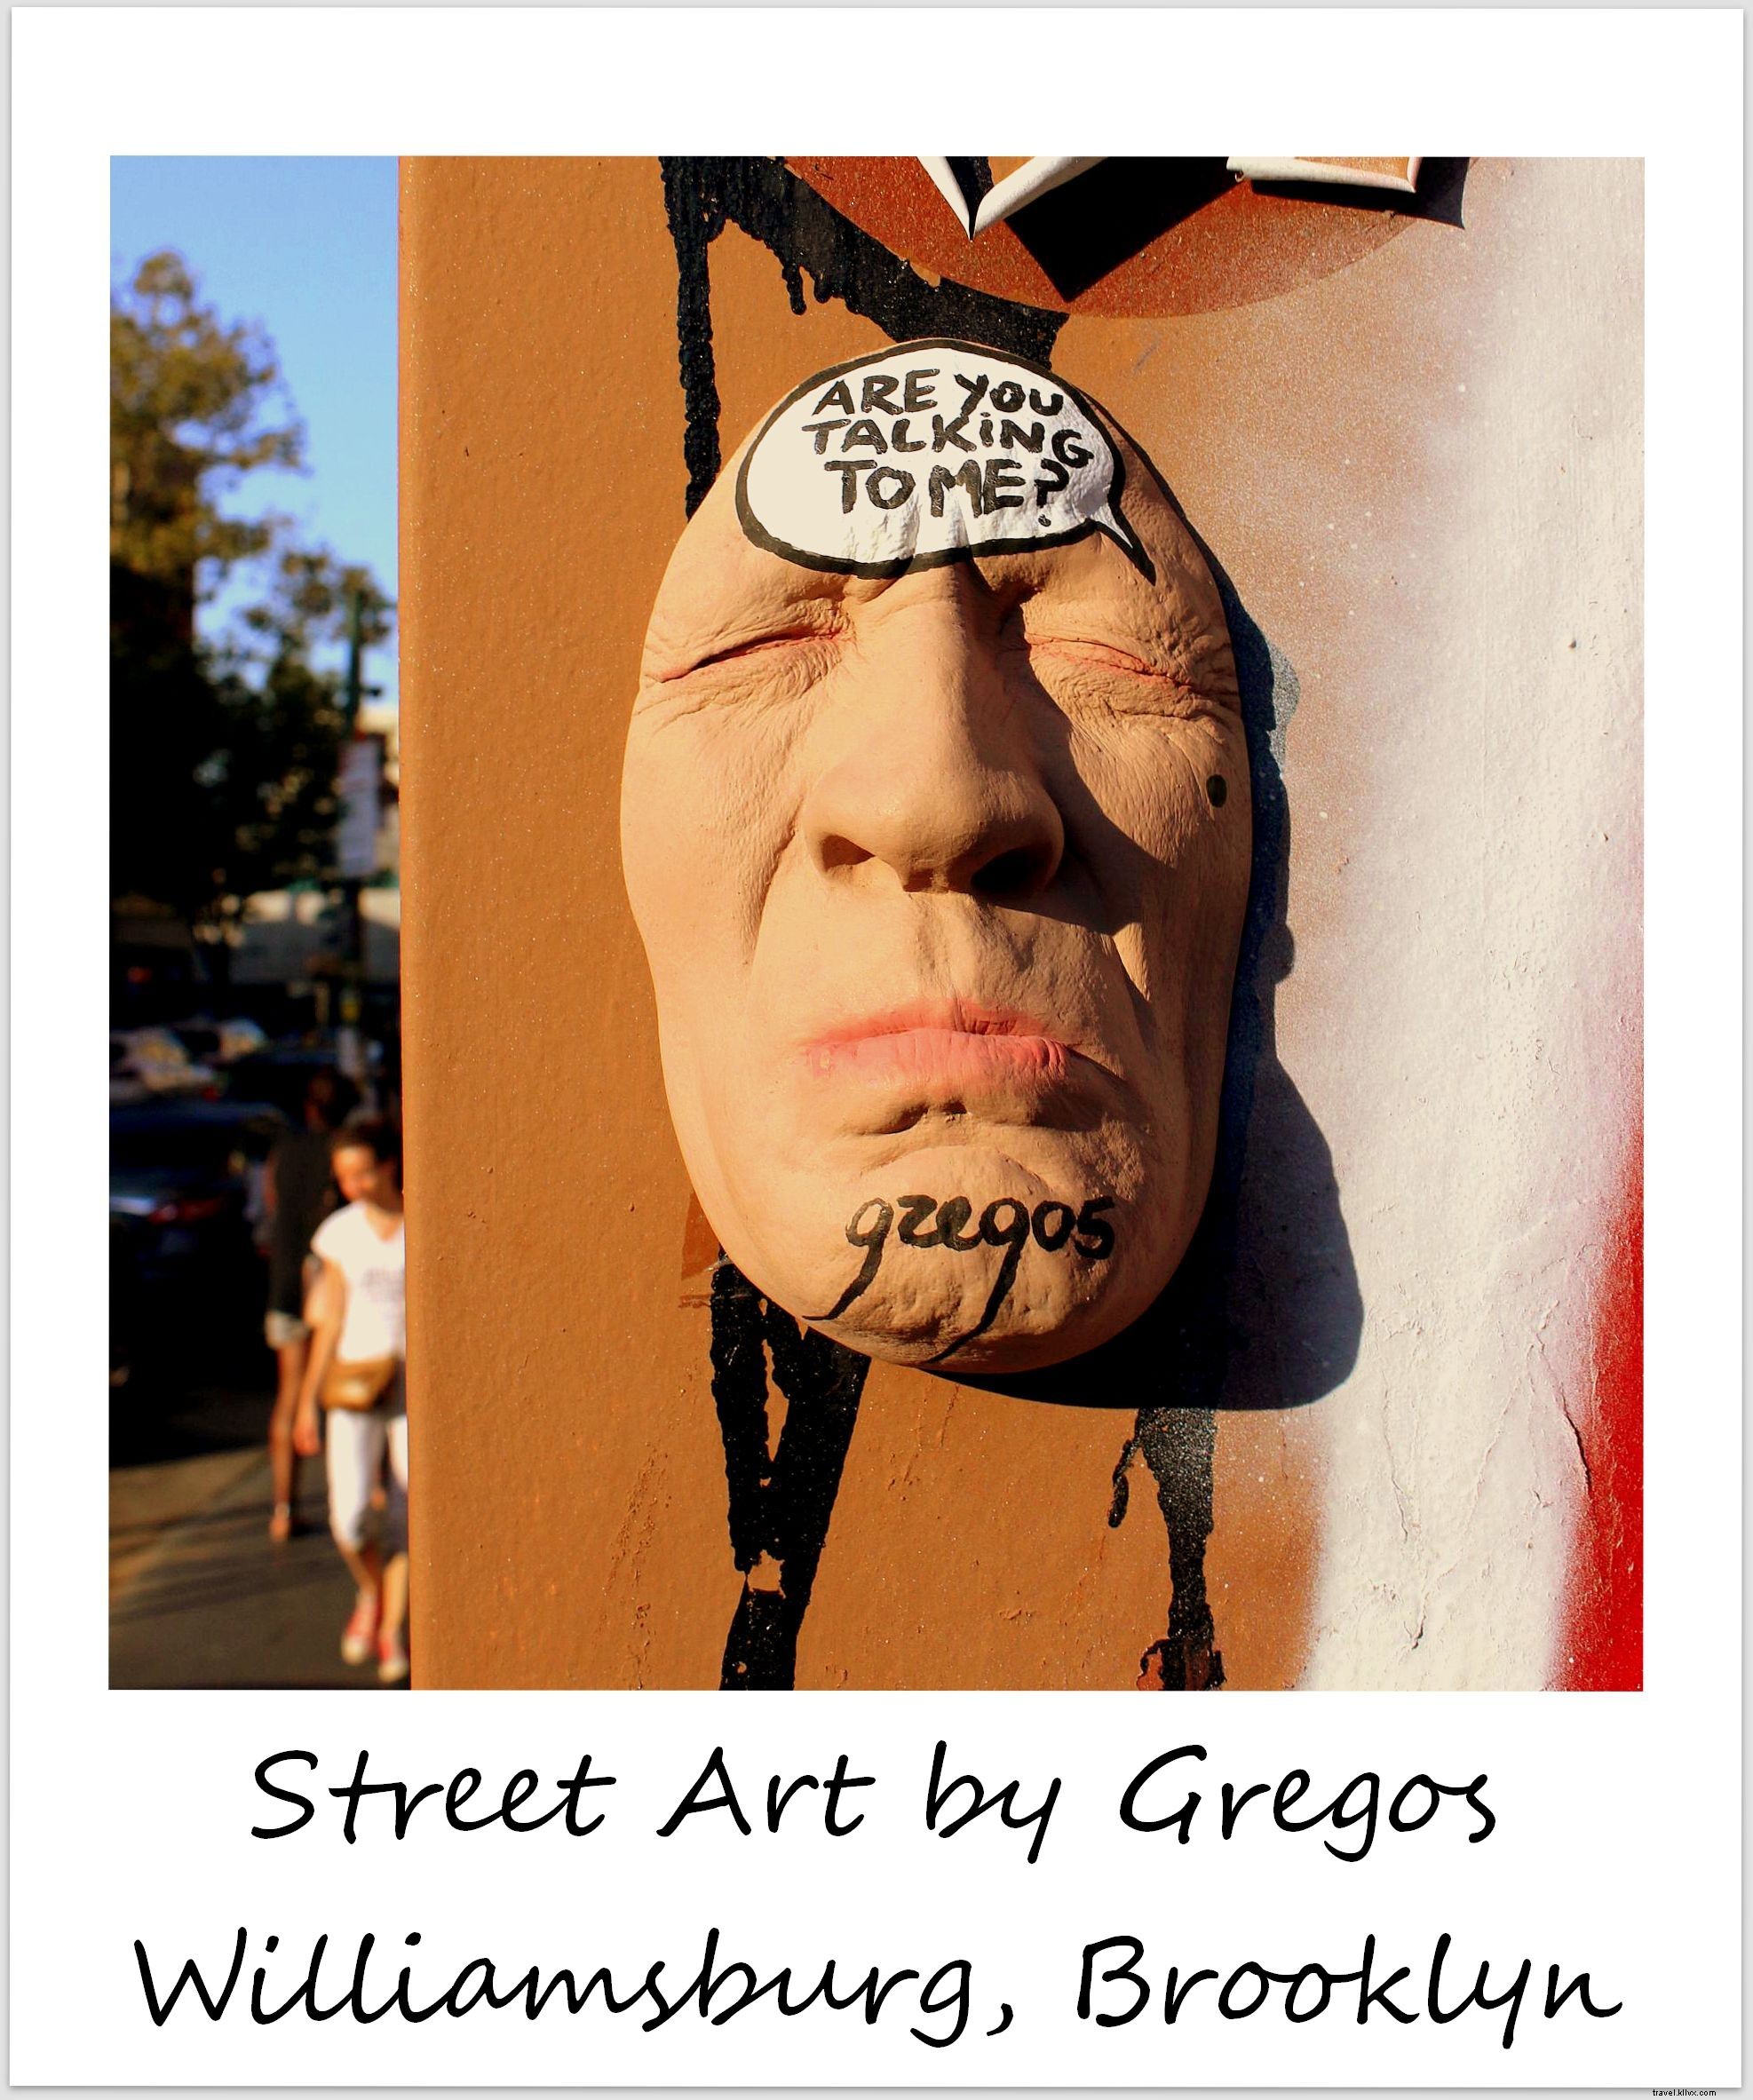 今週のポラロイド：ウィリアムズバーグのグレゴスストリートアート、 ブルックリン